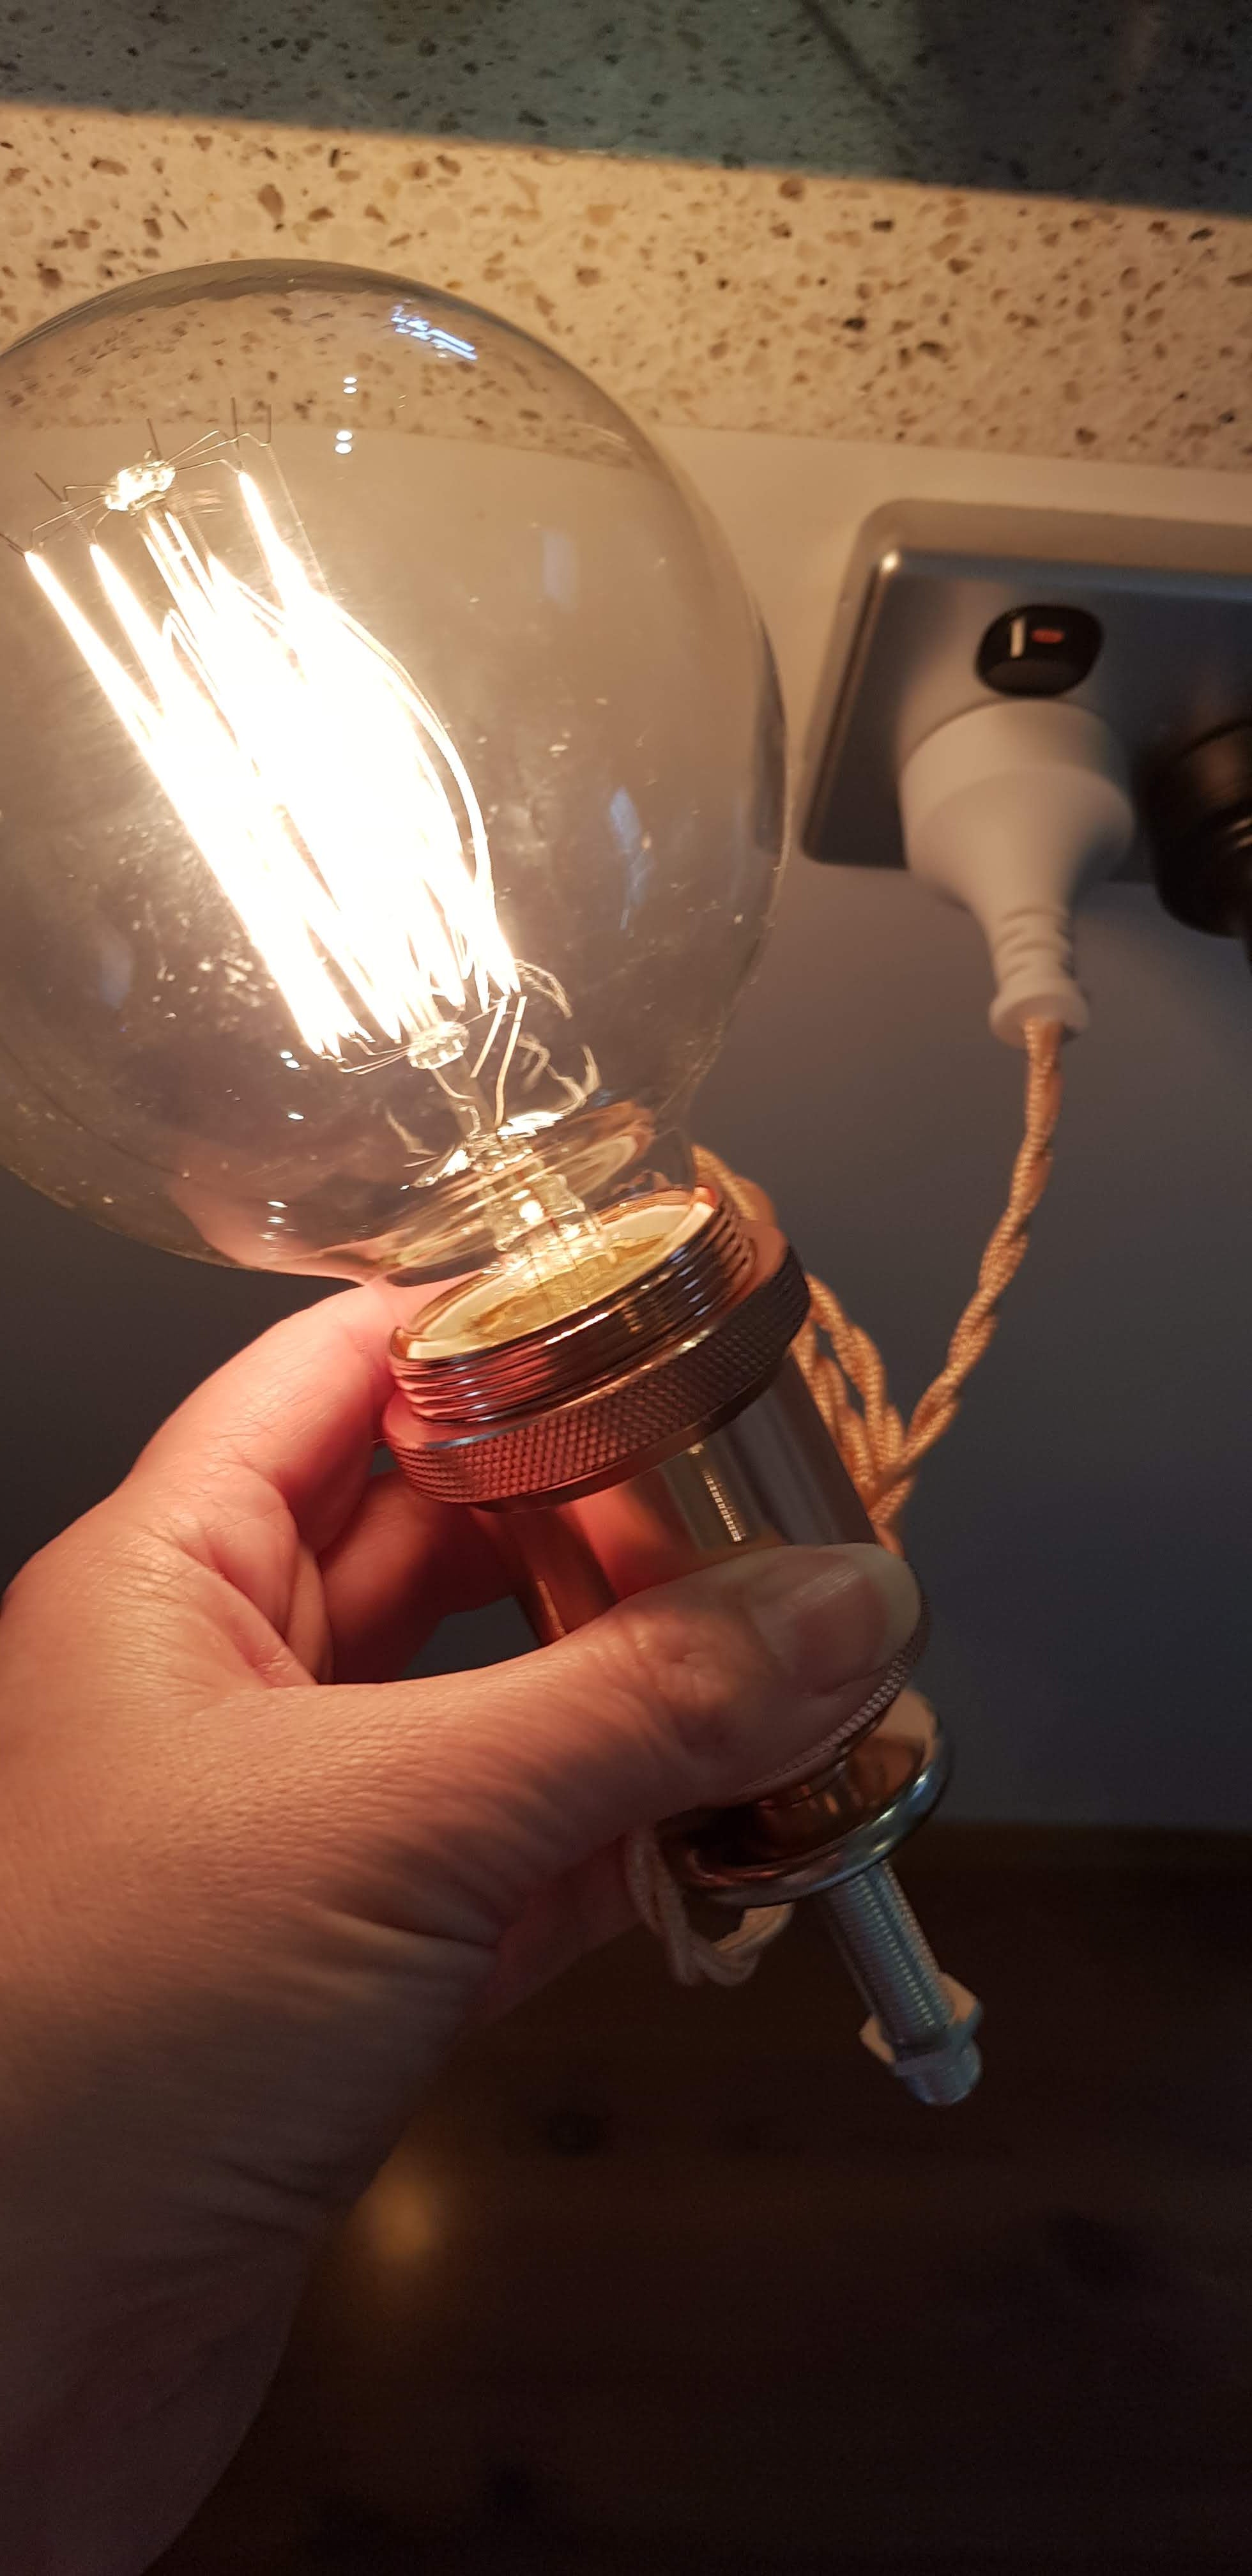 DIY Lamp Kit